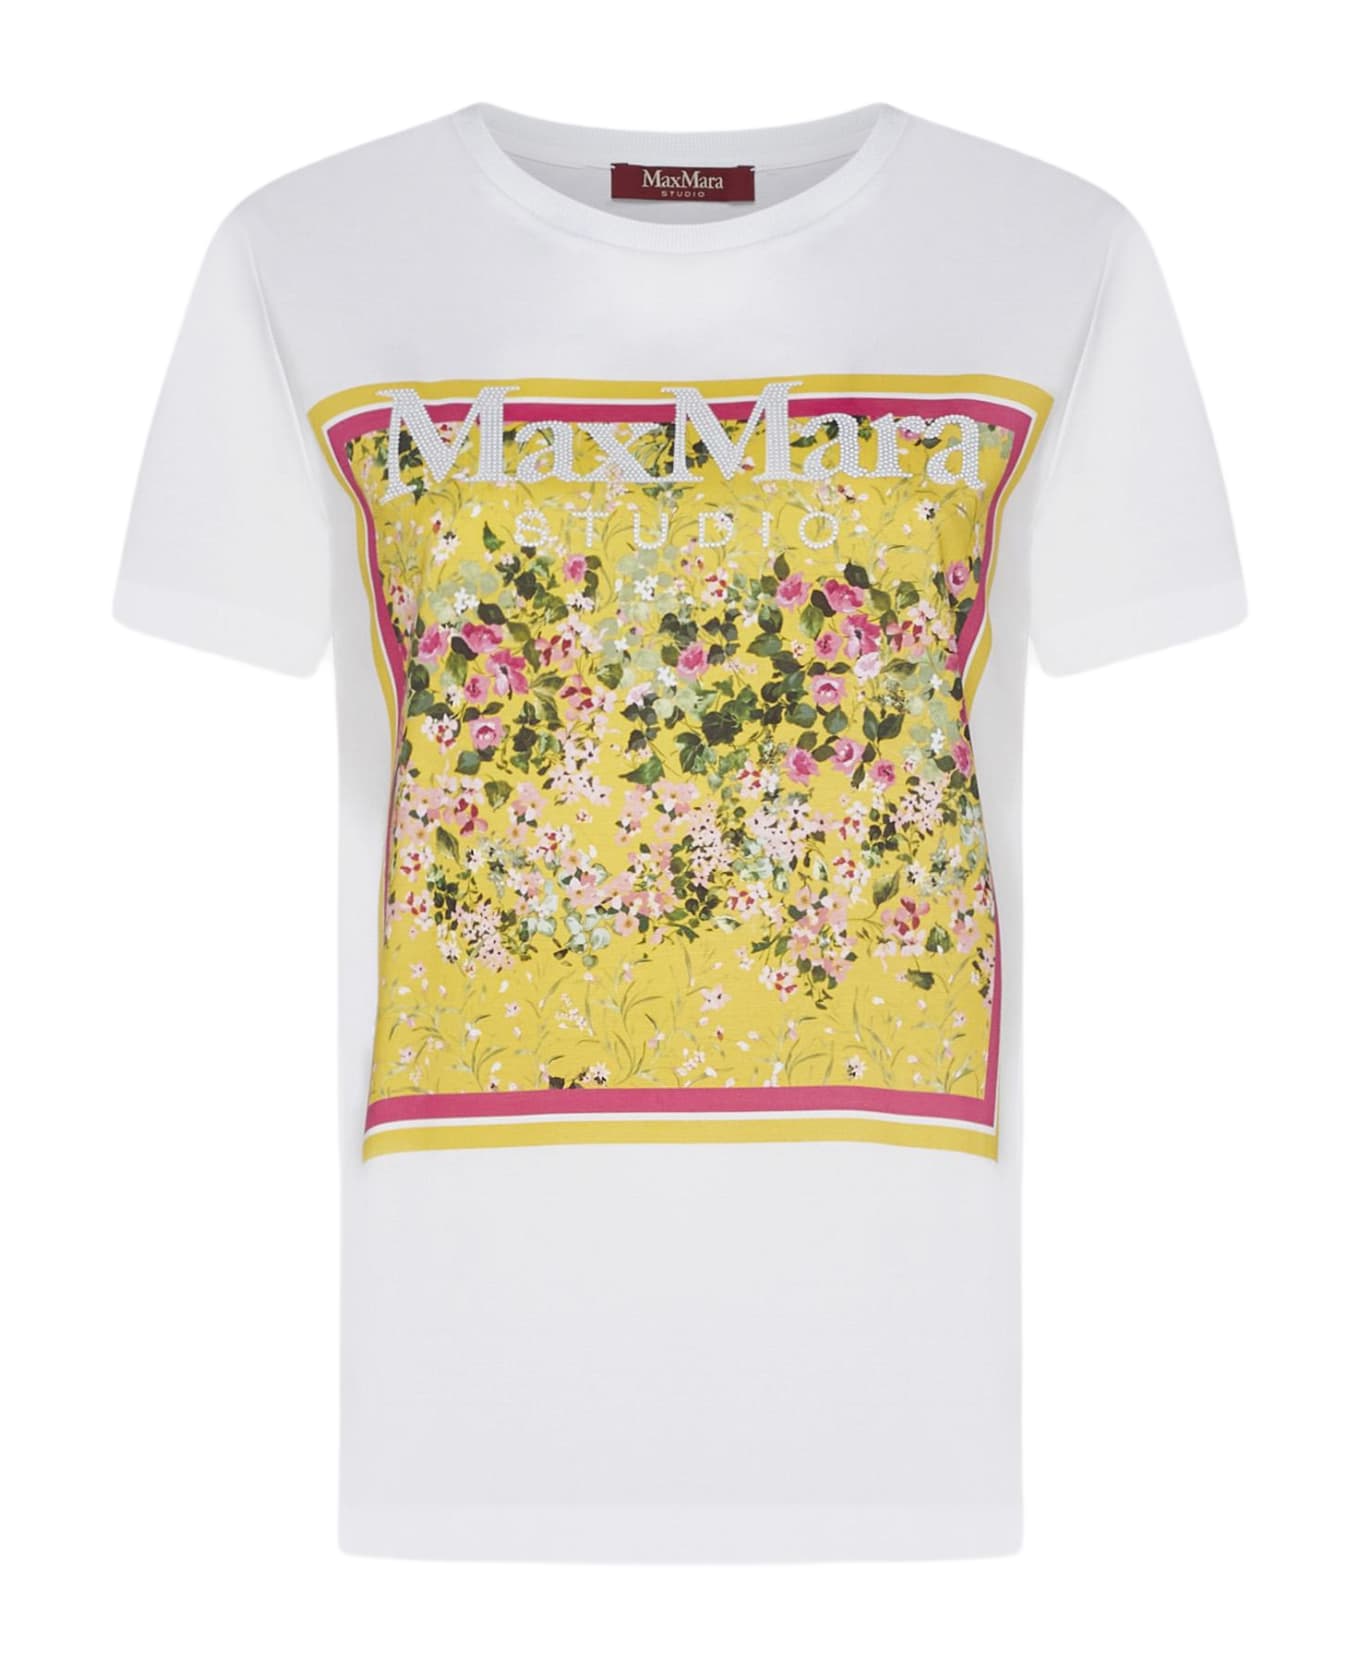 Max Mara Studio Rita Print Cotton T-shirt - White Tシャツ